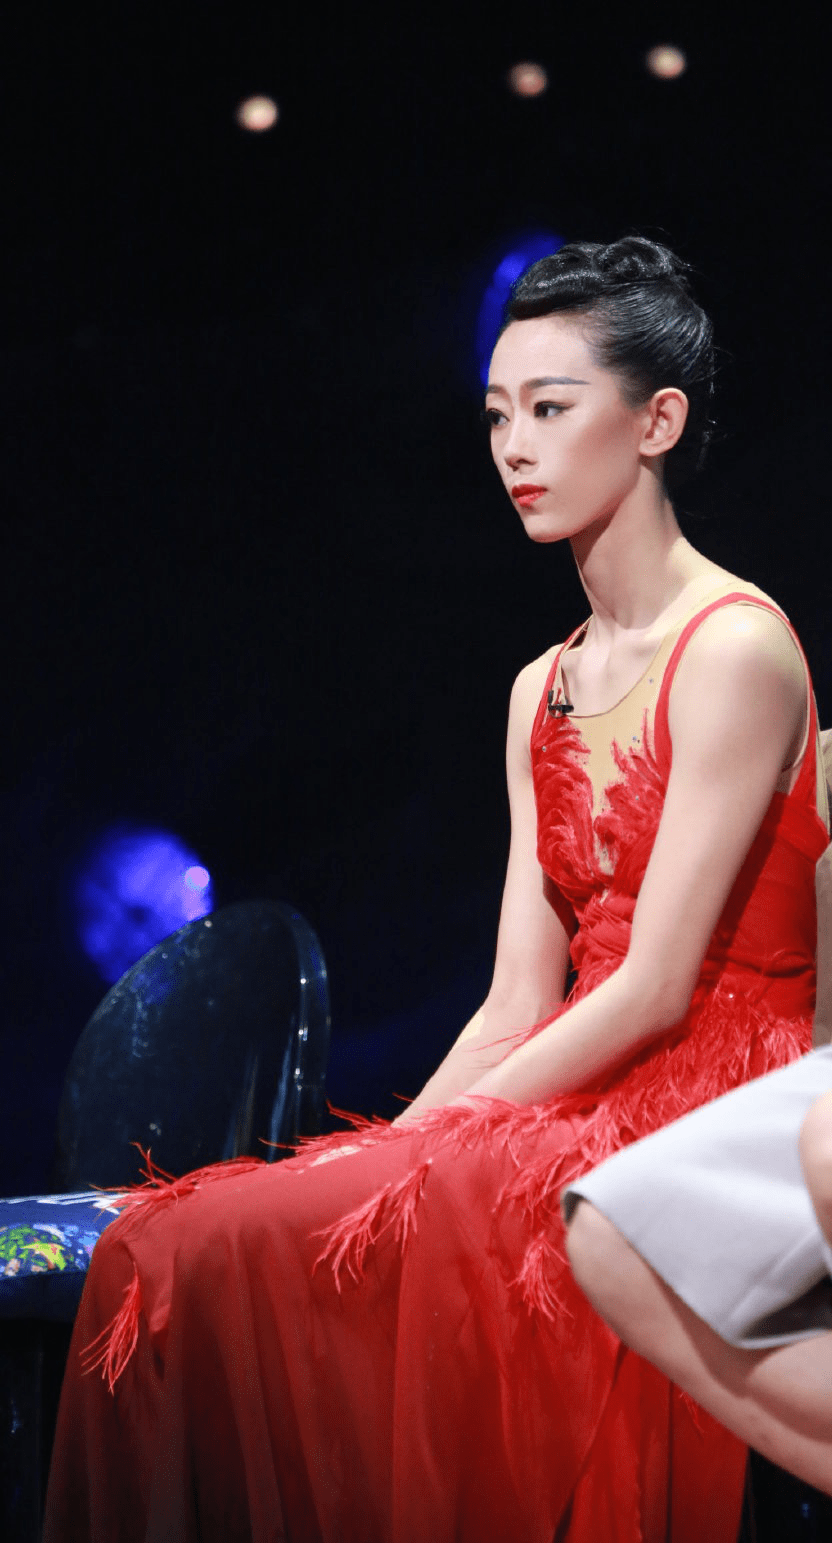 李艳超是第一位站上《舞蹈风暴》第二季舞台的舞者,她的出现为《舞蹈